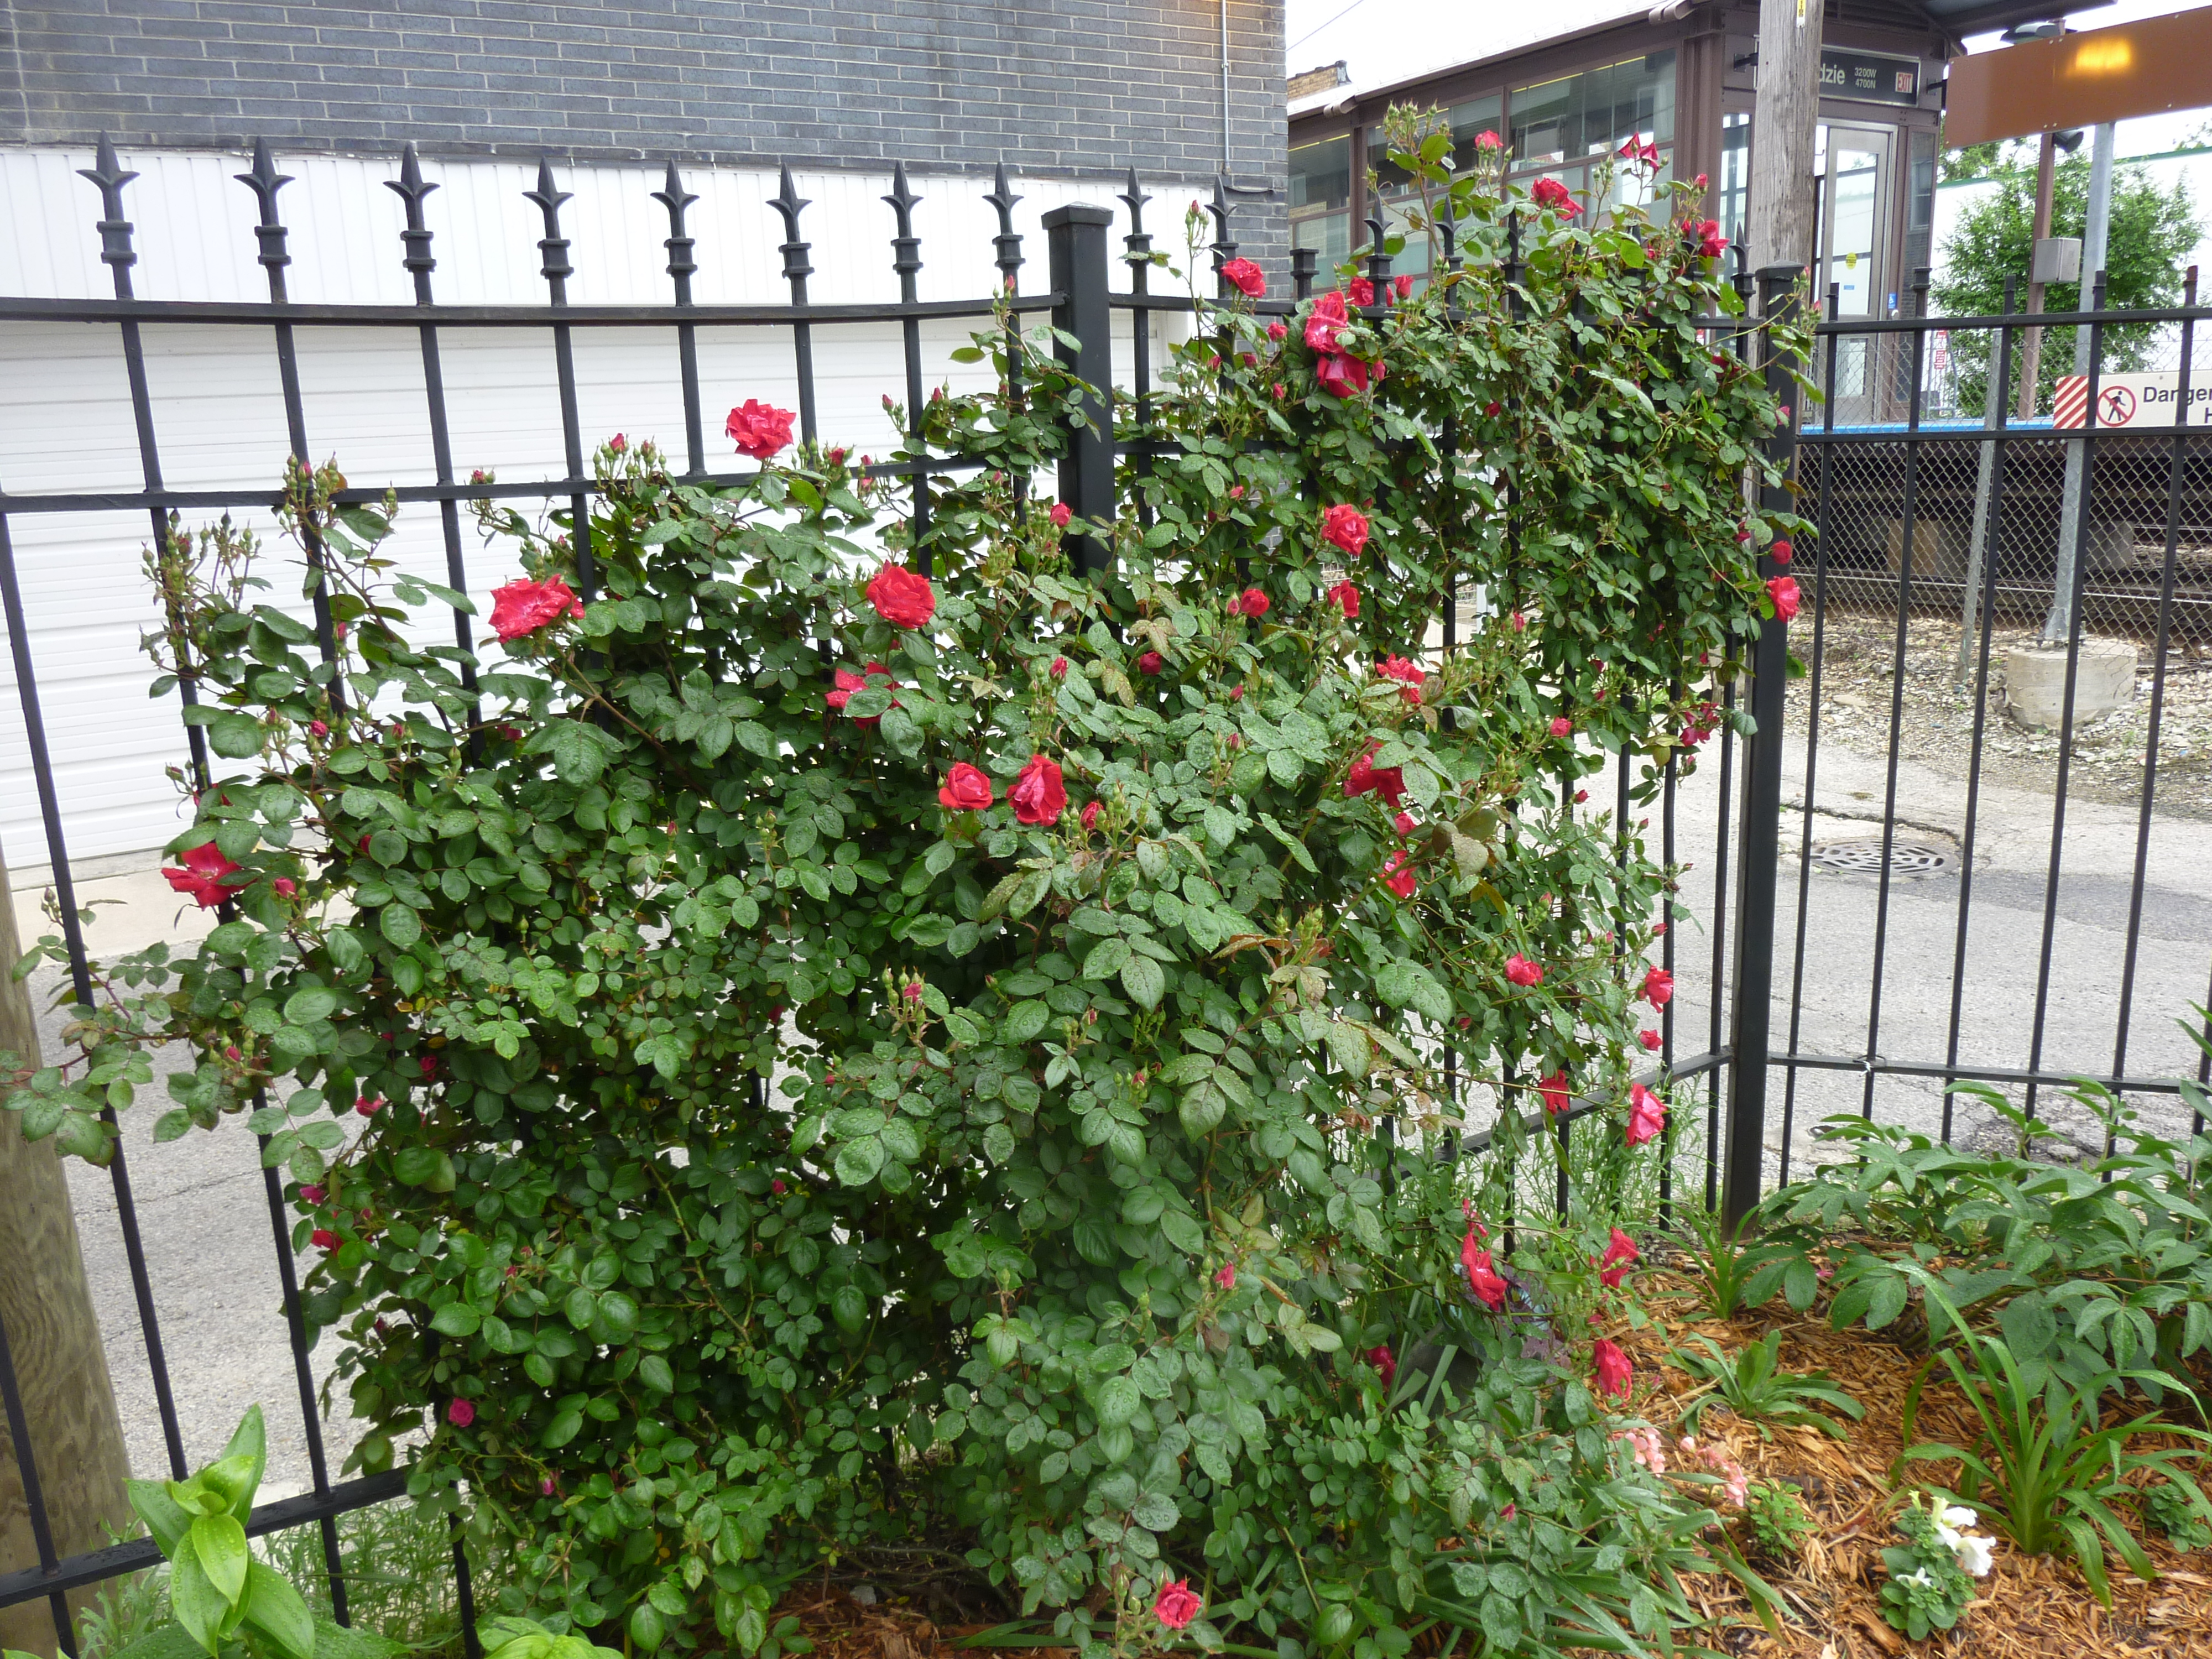 Rose bush before pruning